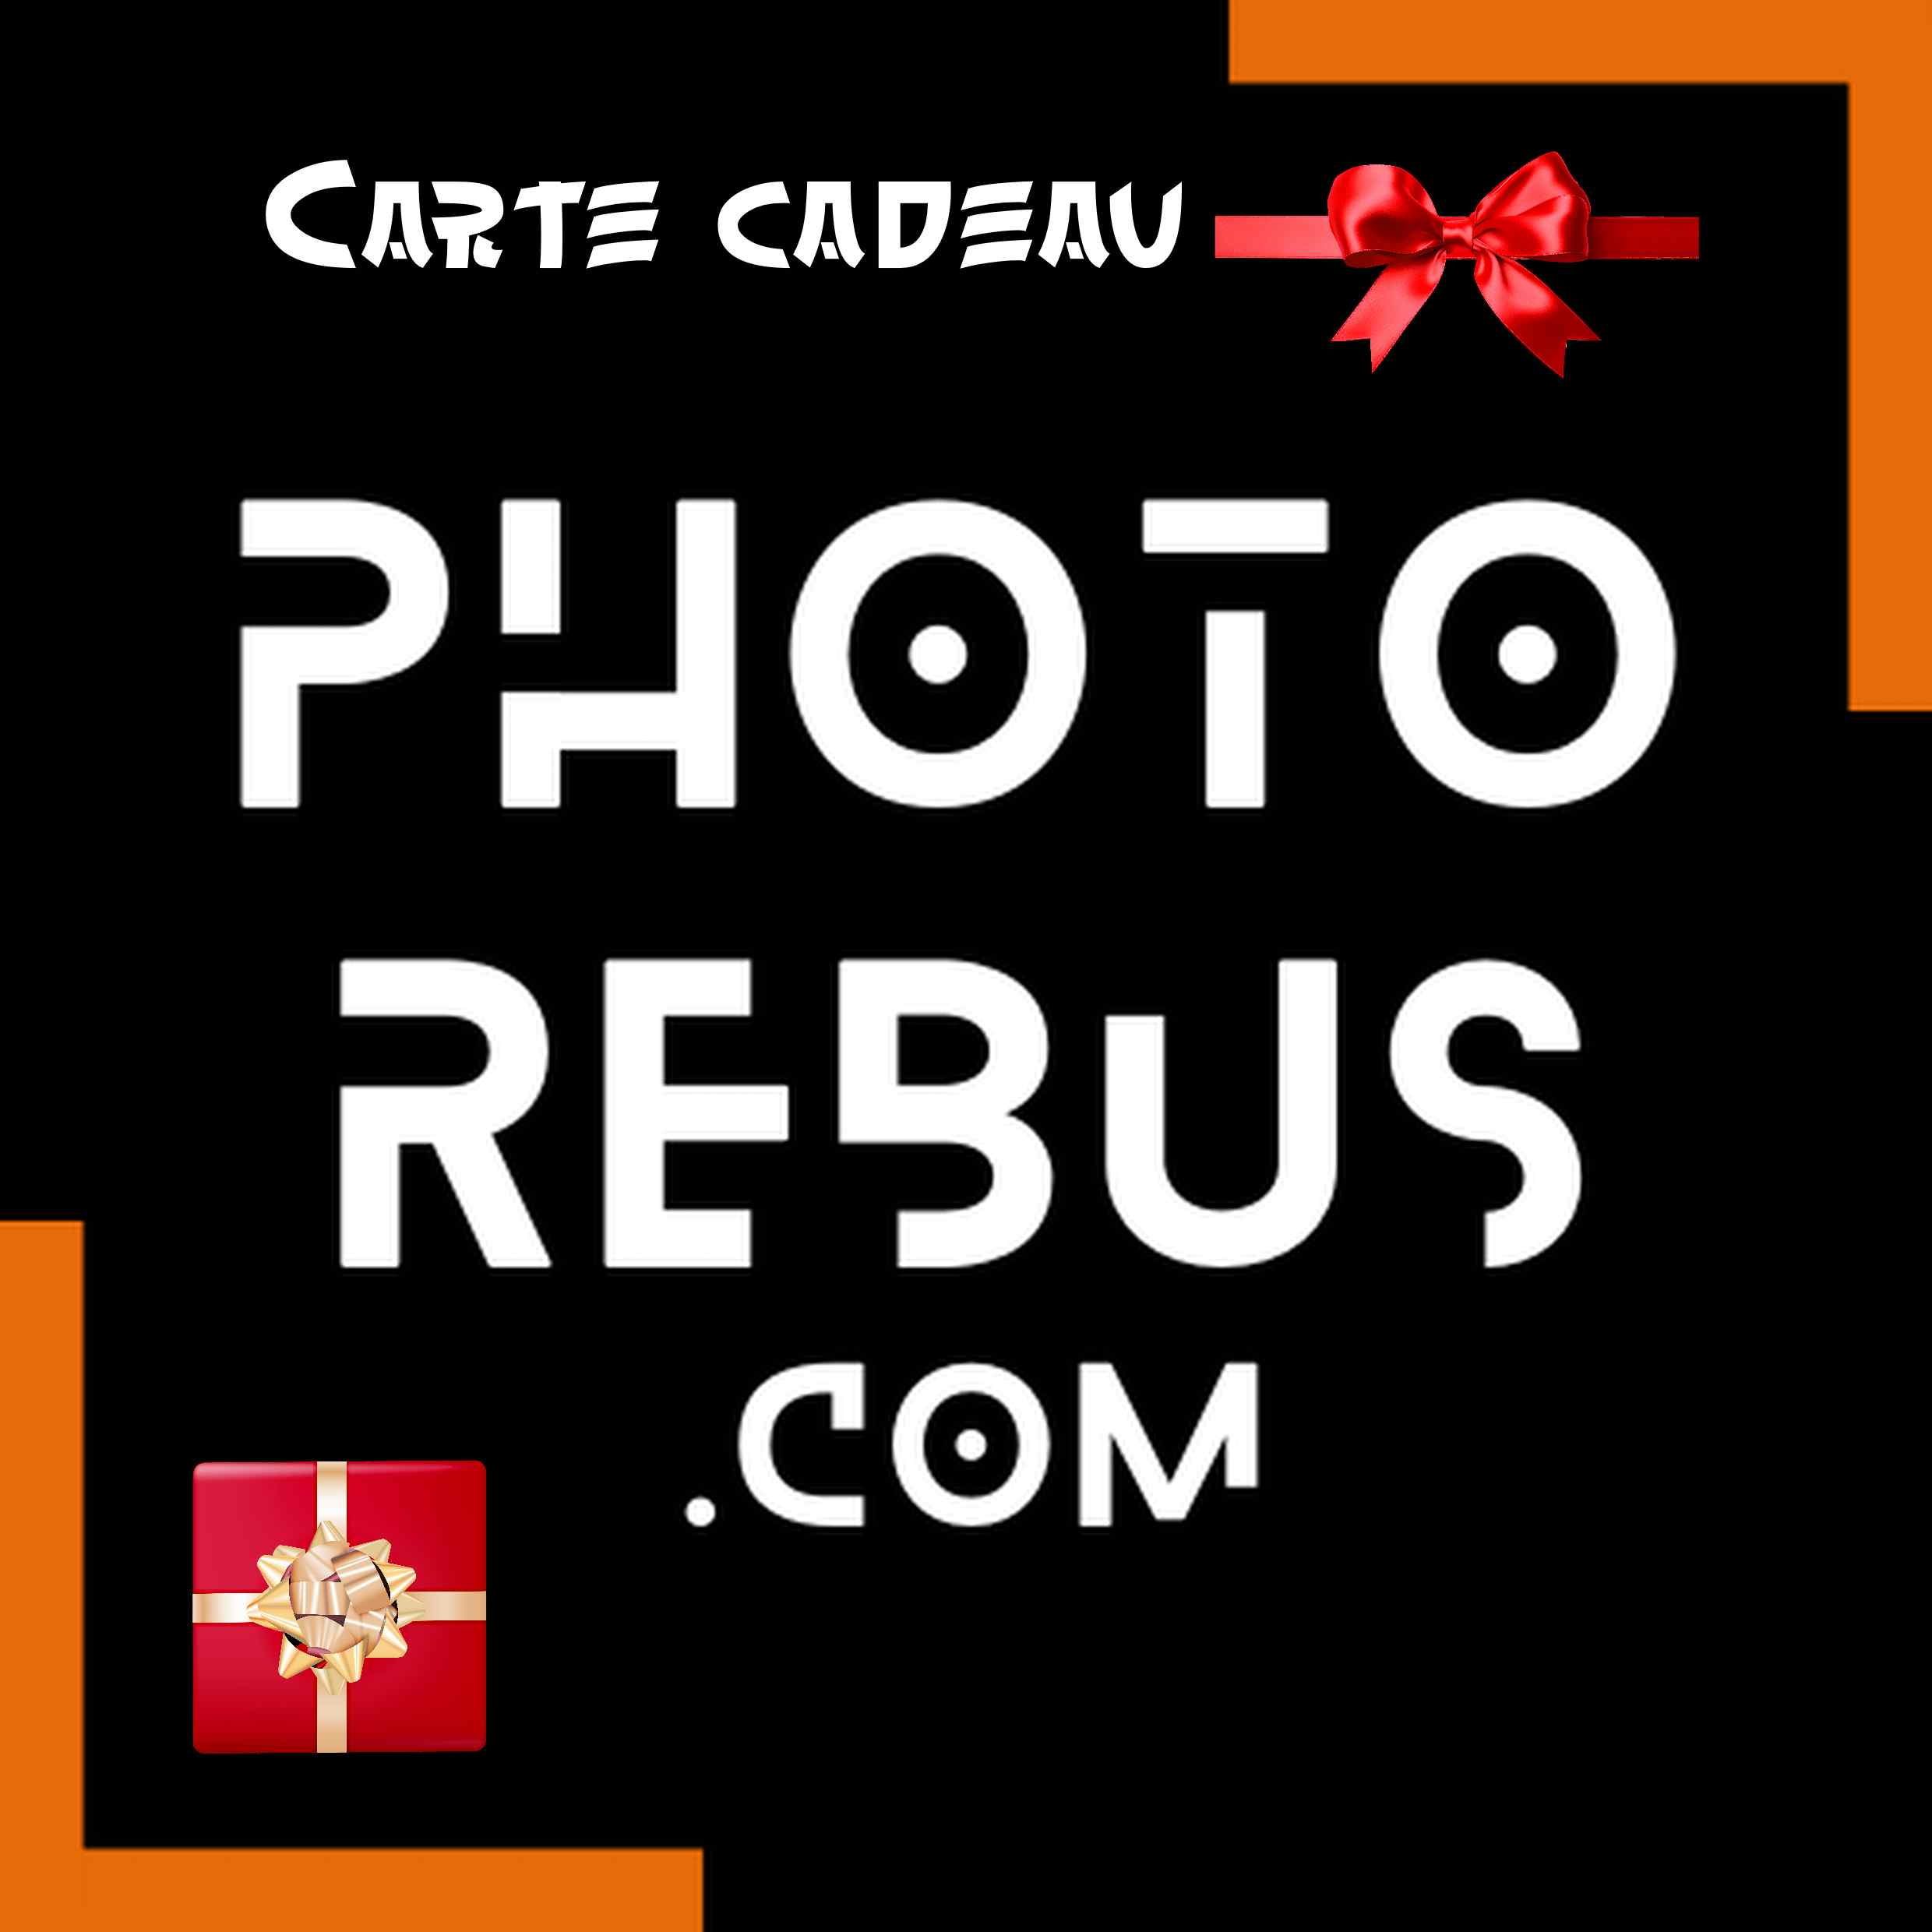 PHOTO REBUS CARTE CADEAU